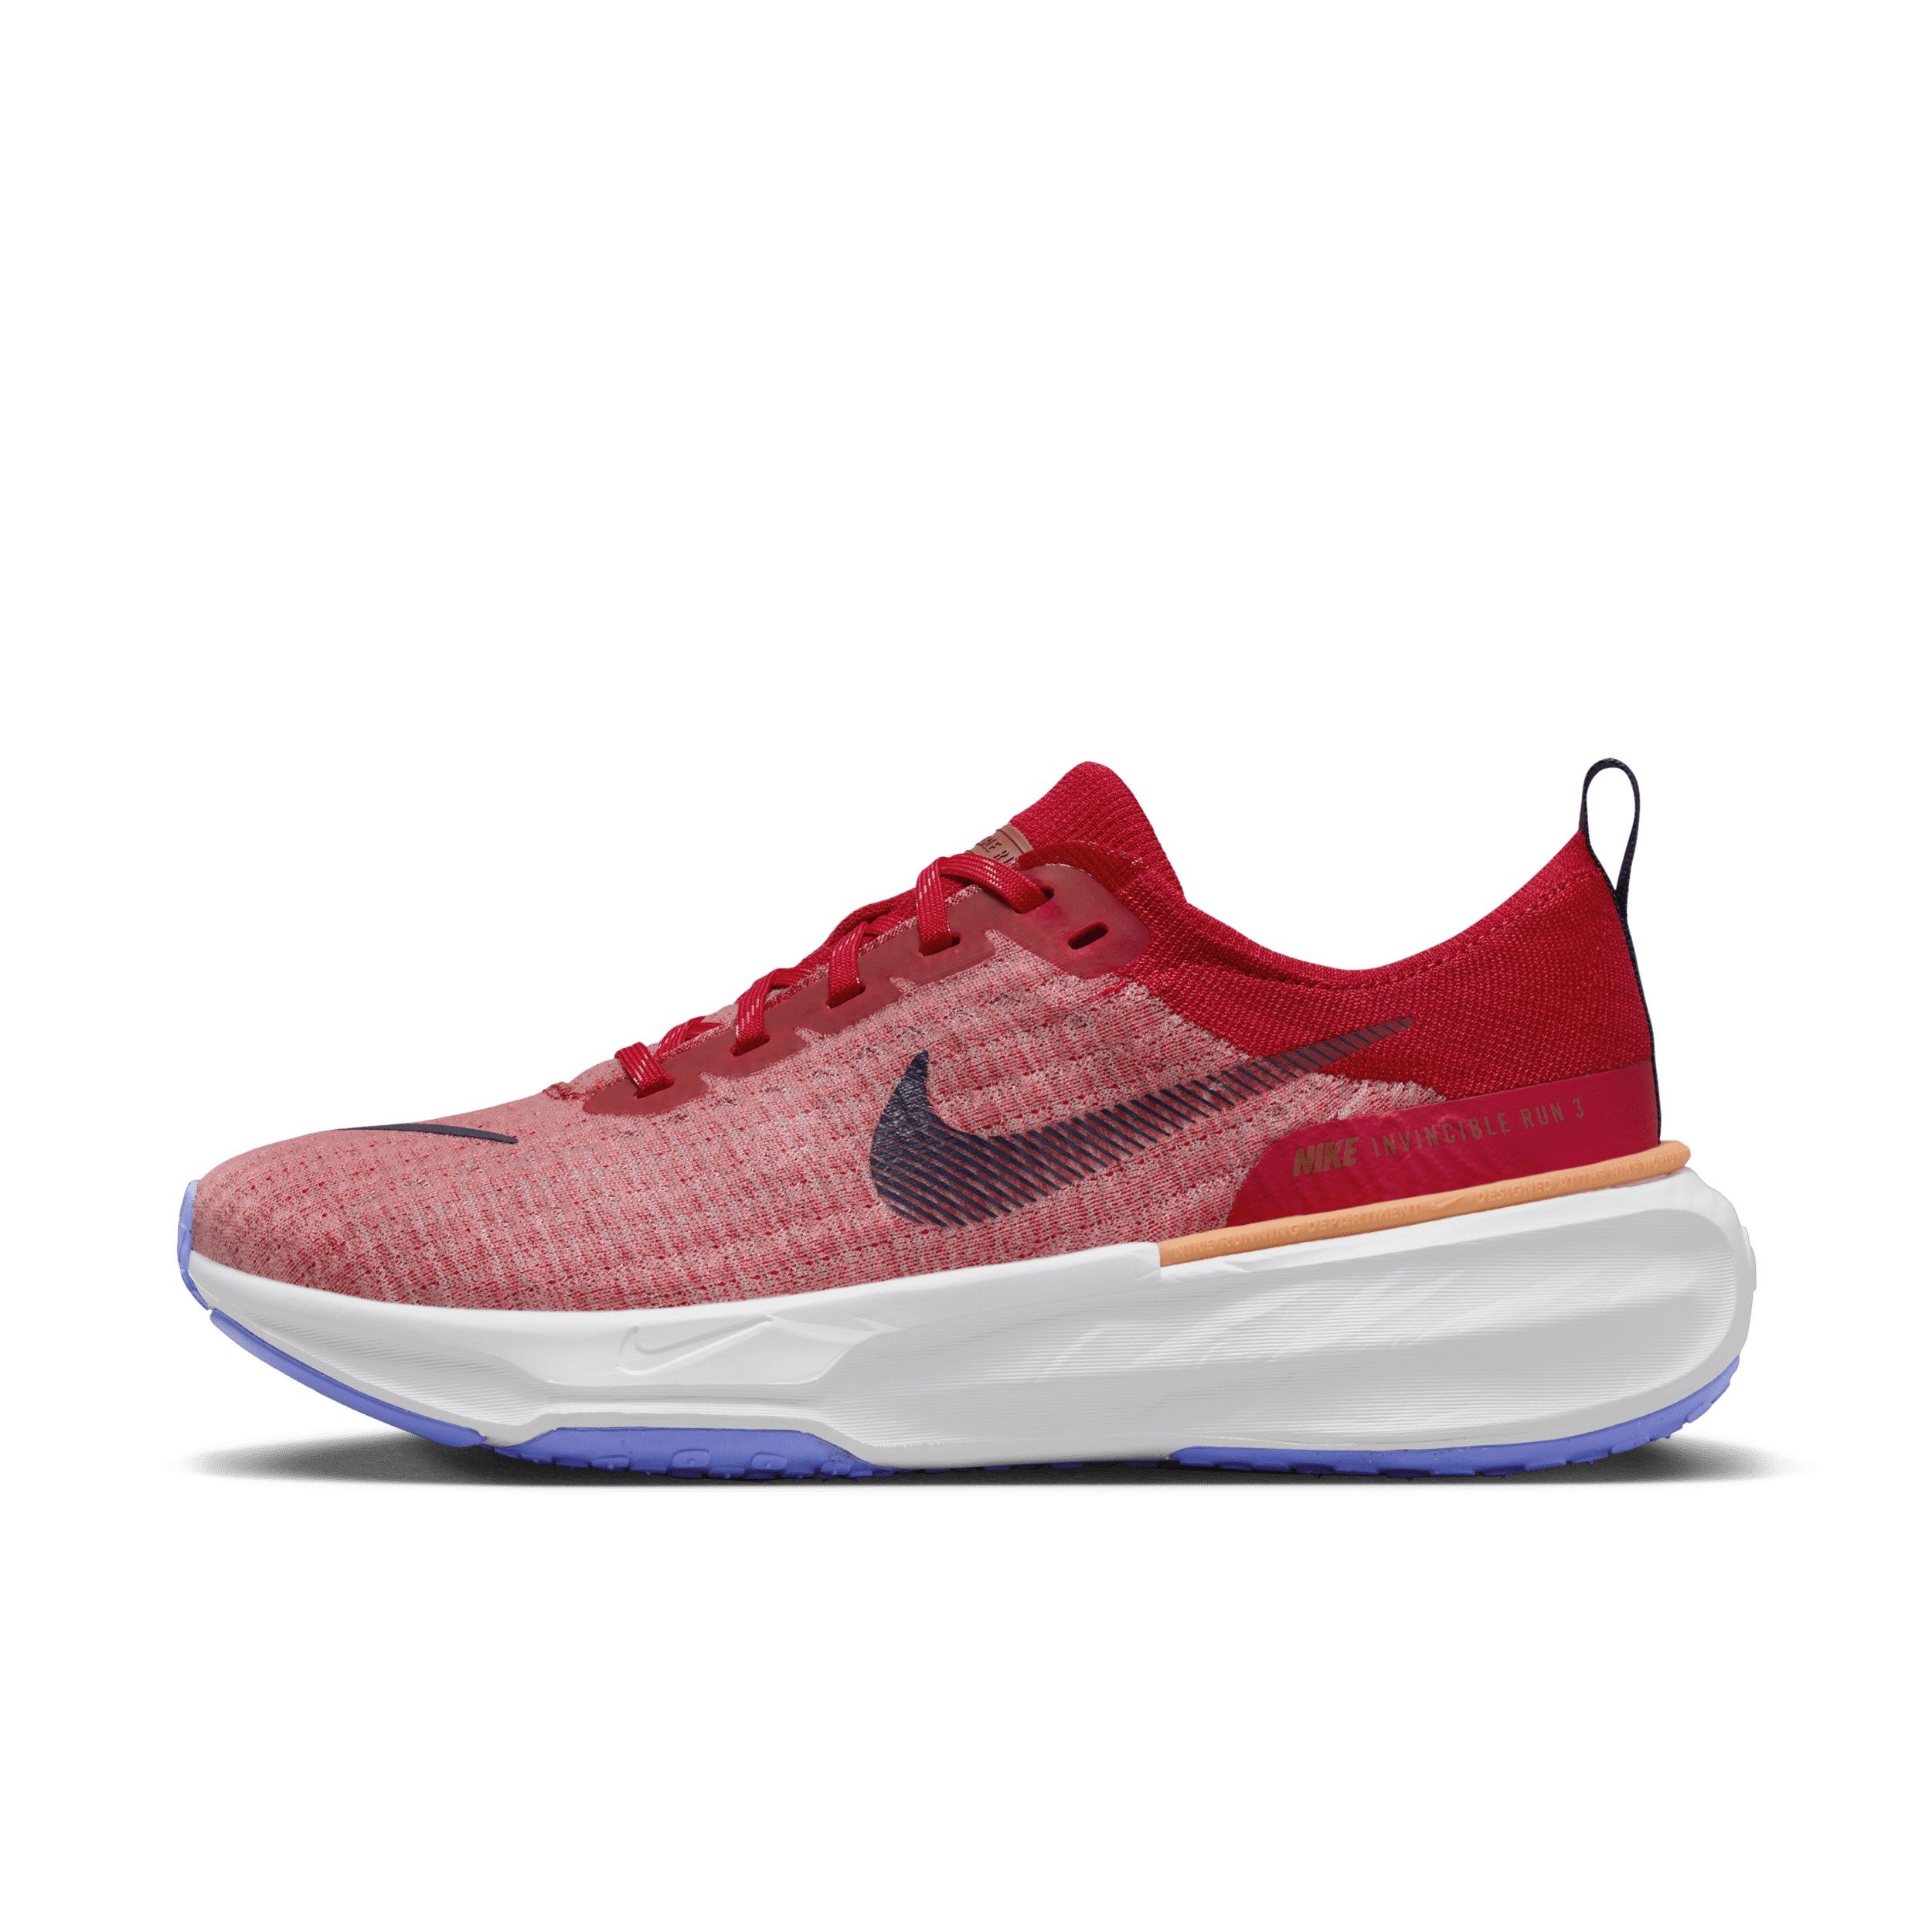 Nike Invincible 3 Zapatillas de running para asfalto - Hombre - Rojo